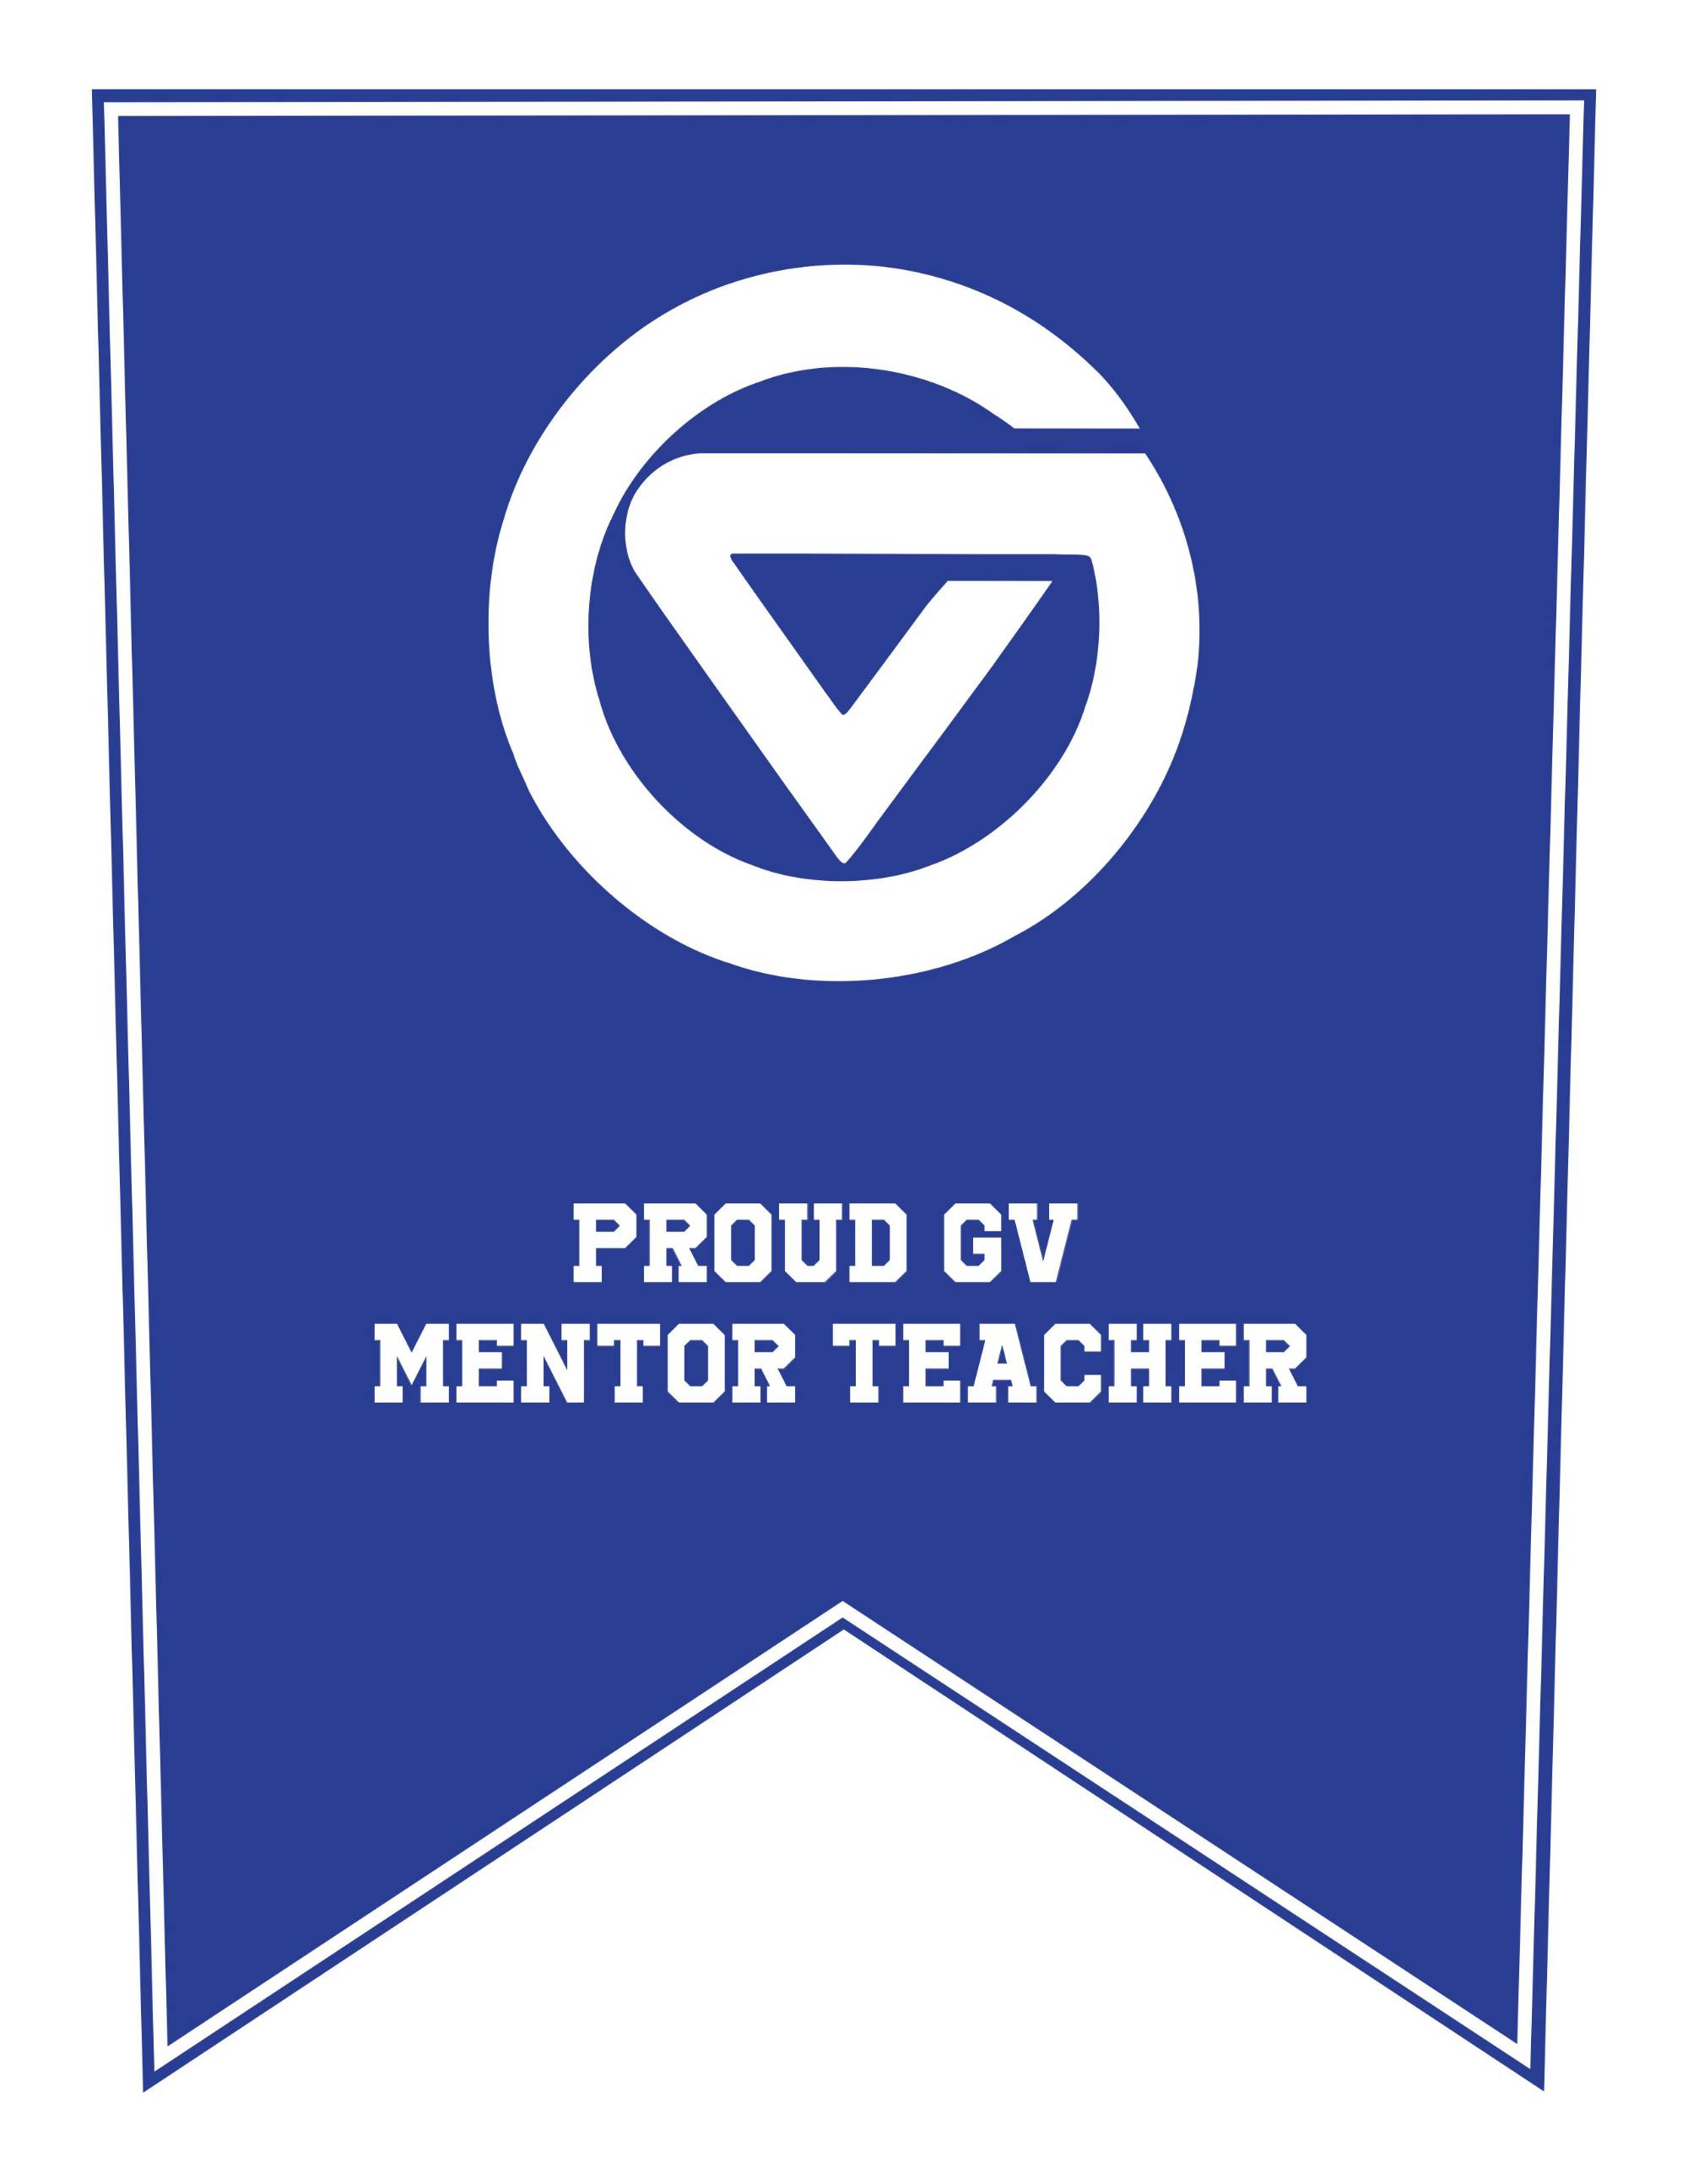 Proud teacher mentor pennant blue